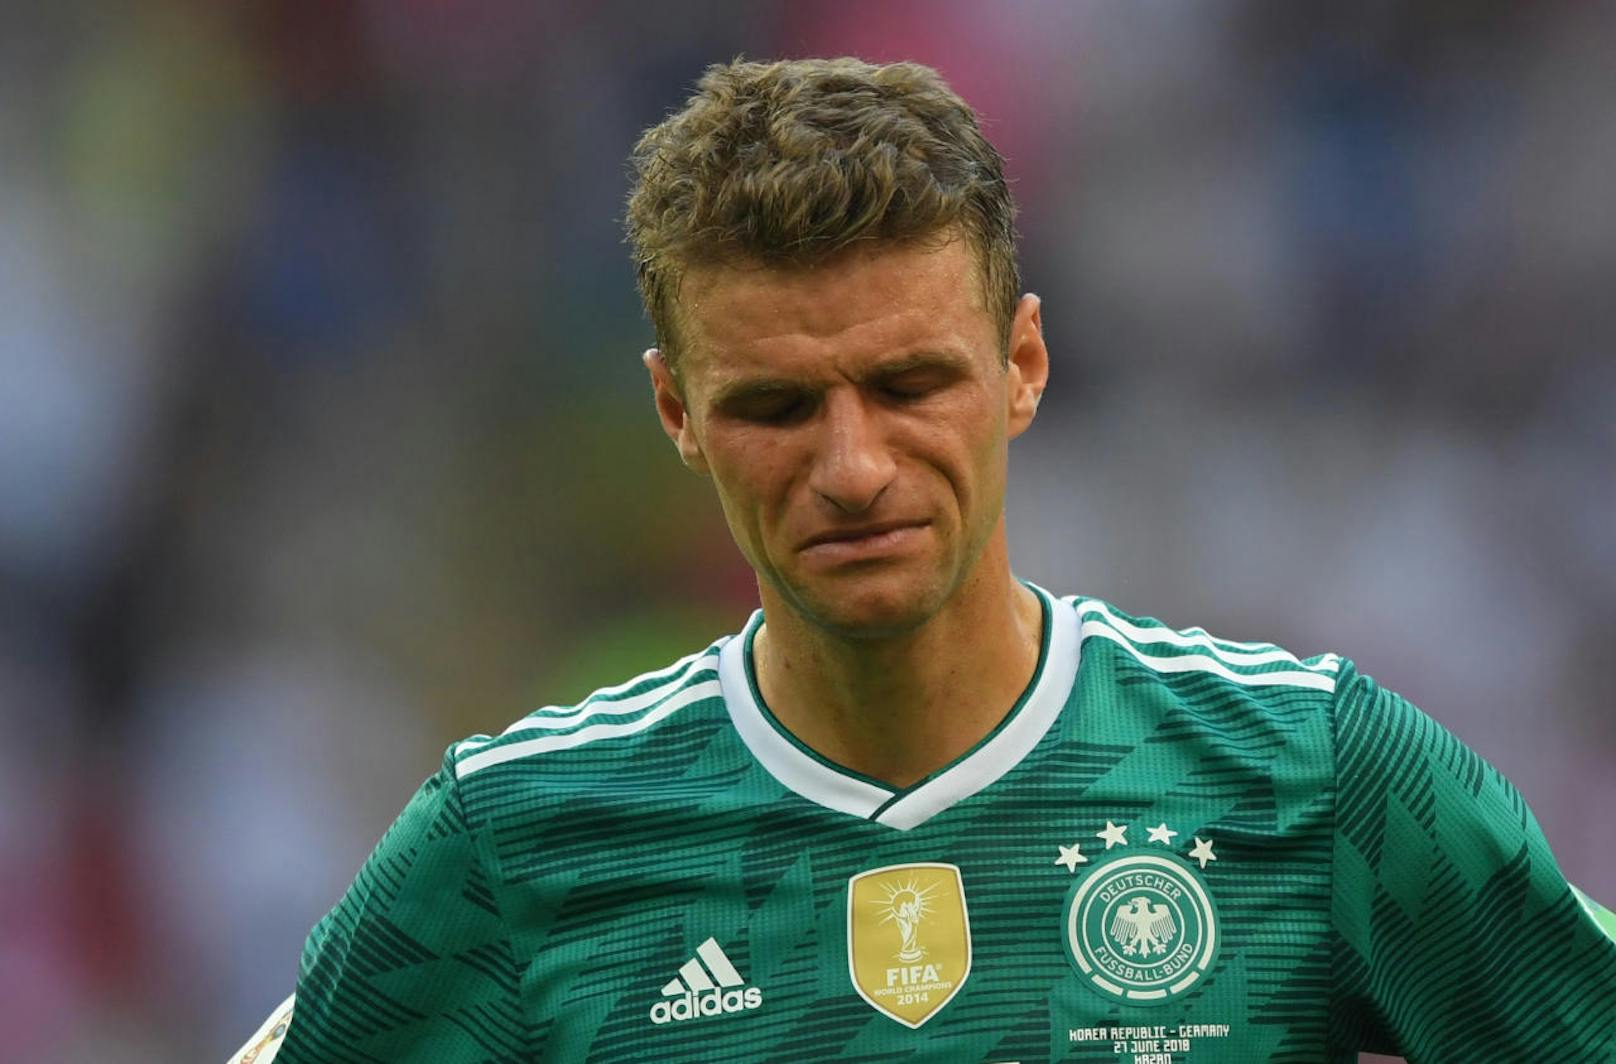 Krokodilstränen in Deutschland! Zum ersten Mal in der Geschichte schied die DFB-Elf schon in der Vorrunde einer Weltmeisterschaft aus.